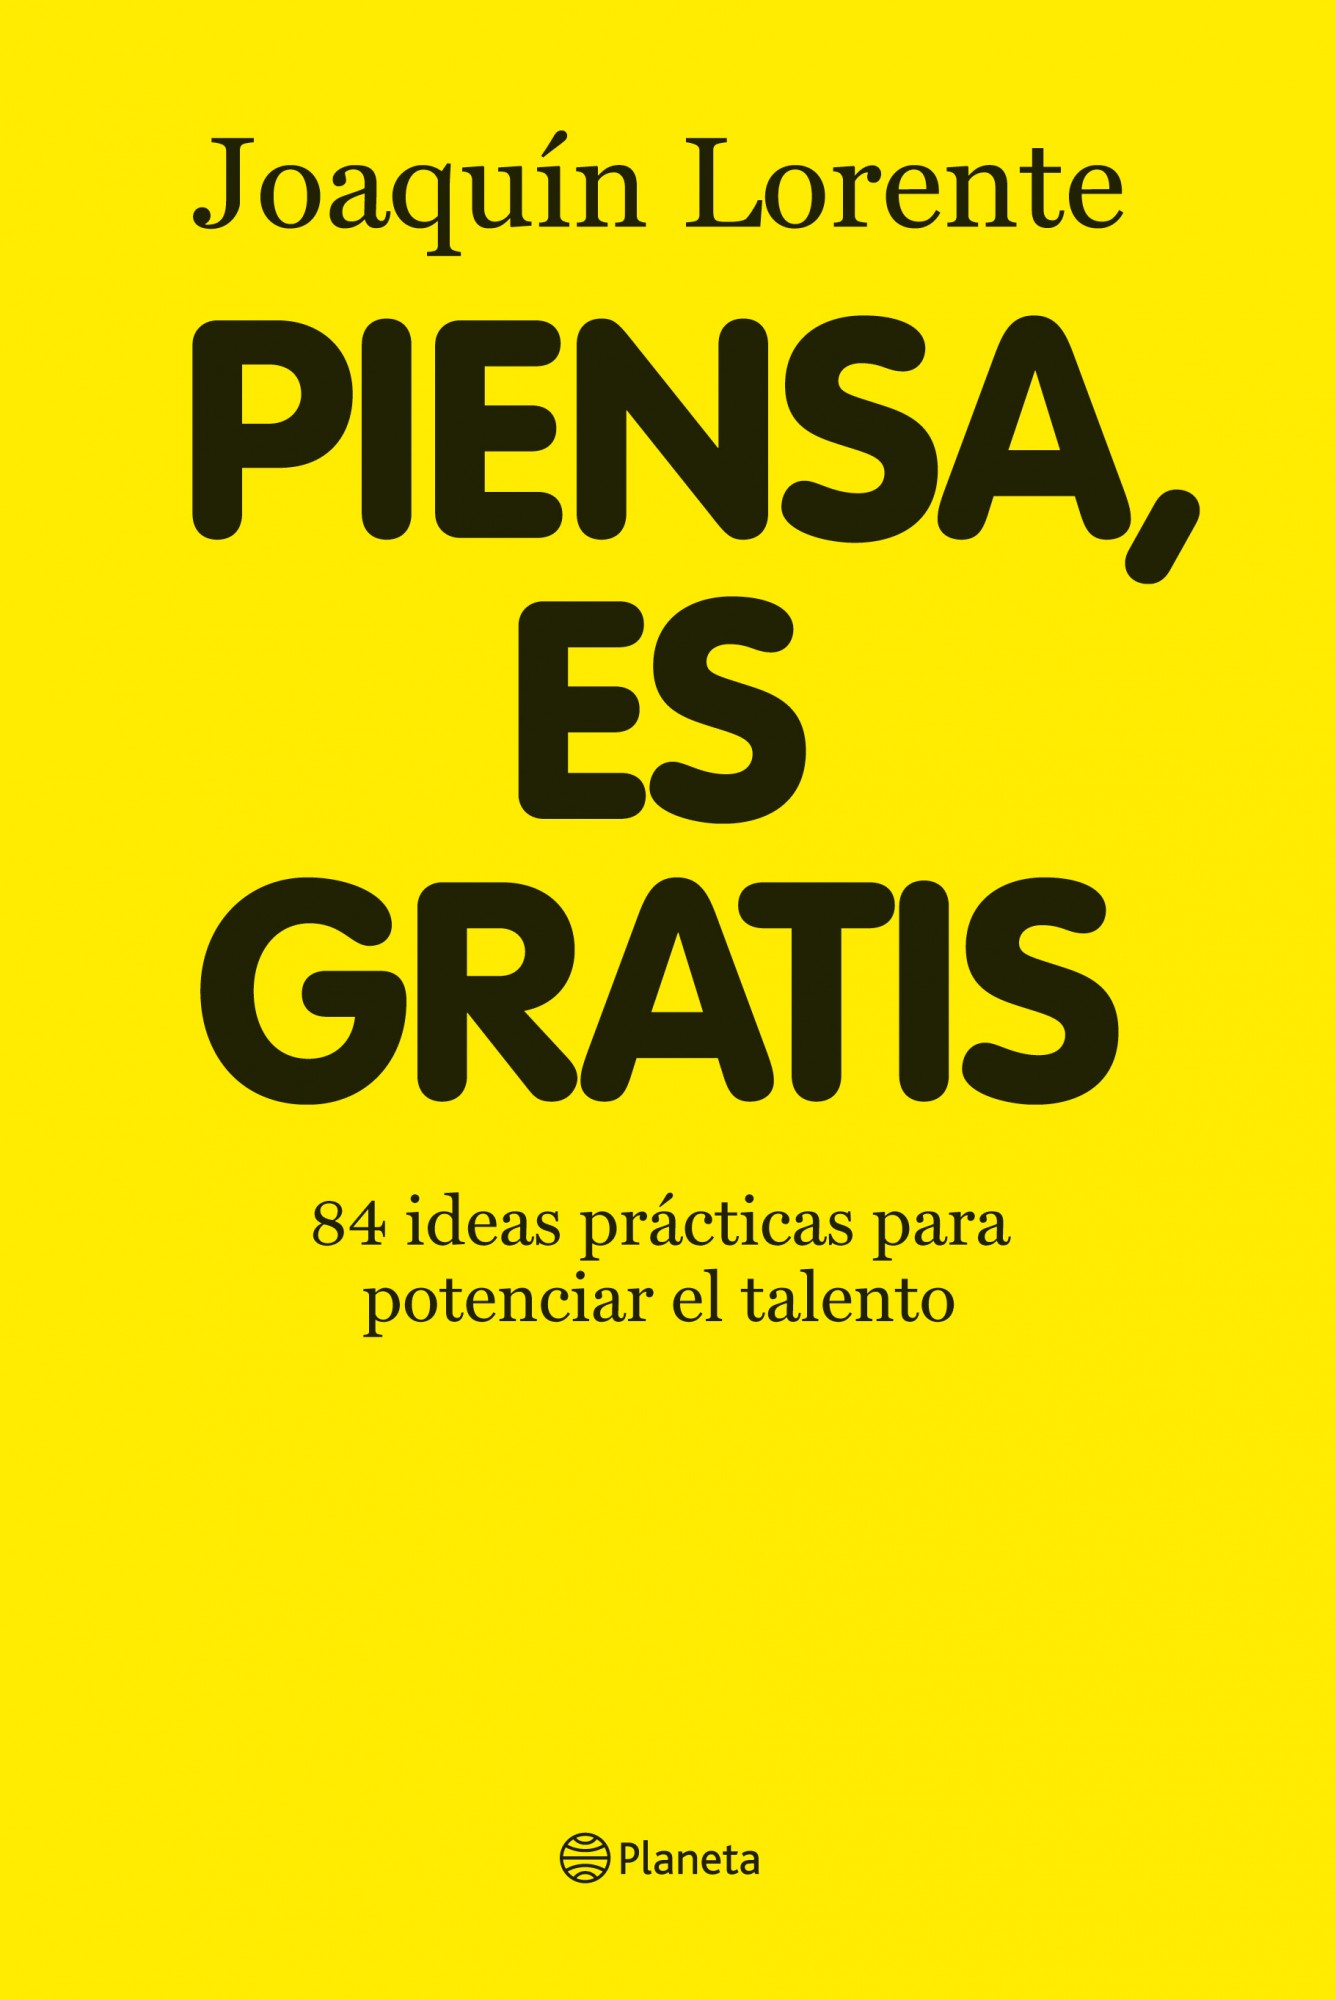 Audiolibro Piensa, es gratis: 84 ideas brillantes para potenciar el talento – Joaquín Lorente